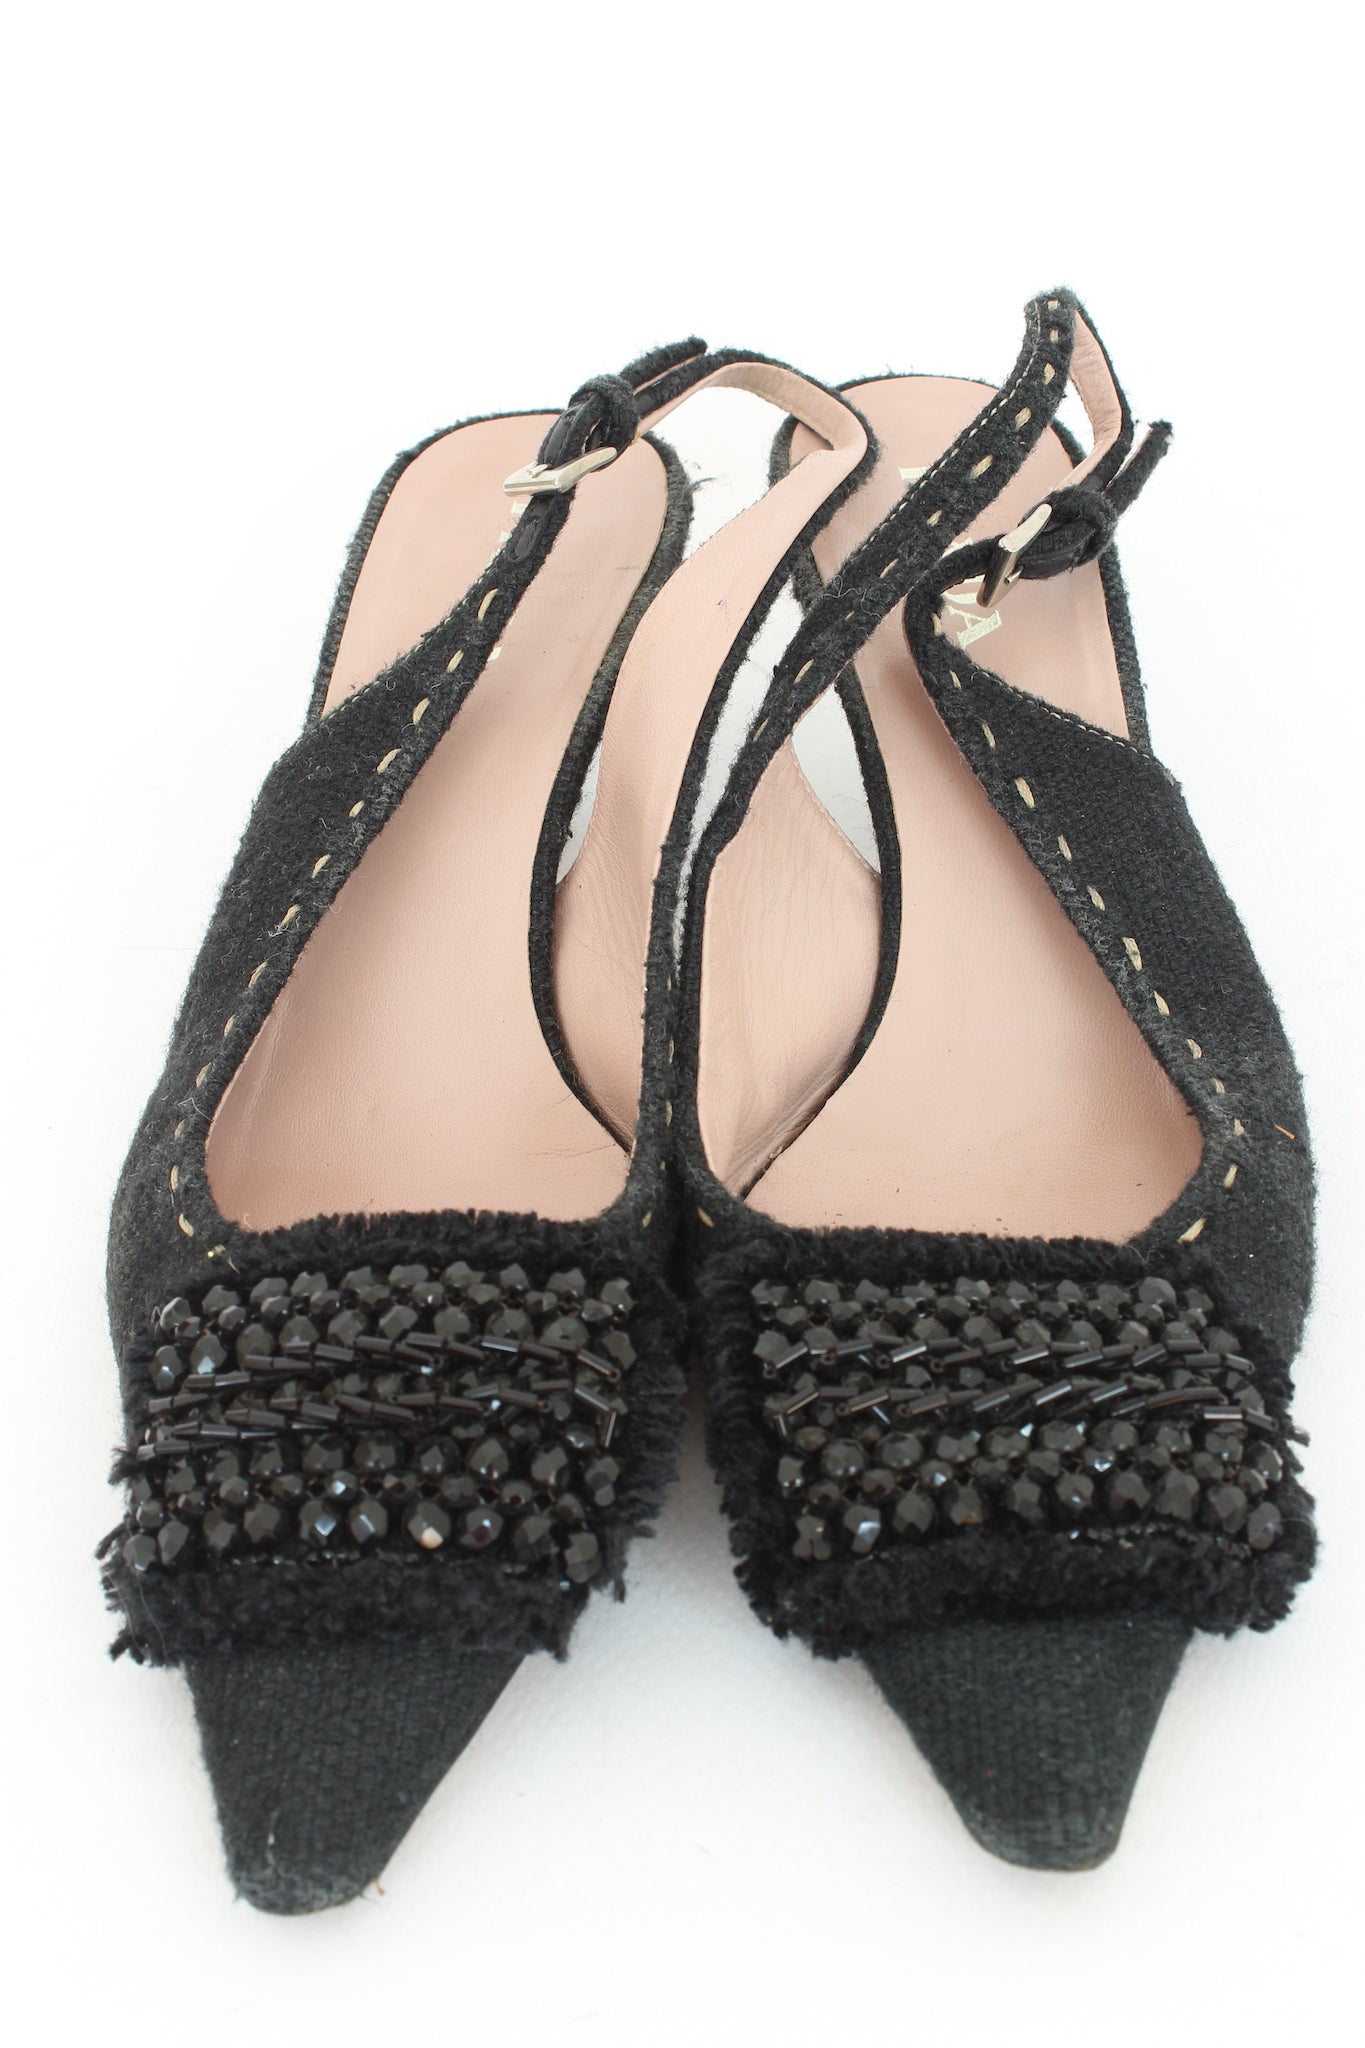 Prada Black Sequins Vintage Slingback Heel Pumps Shoes 2000s